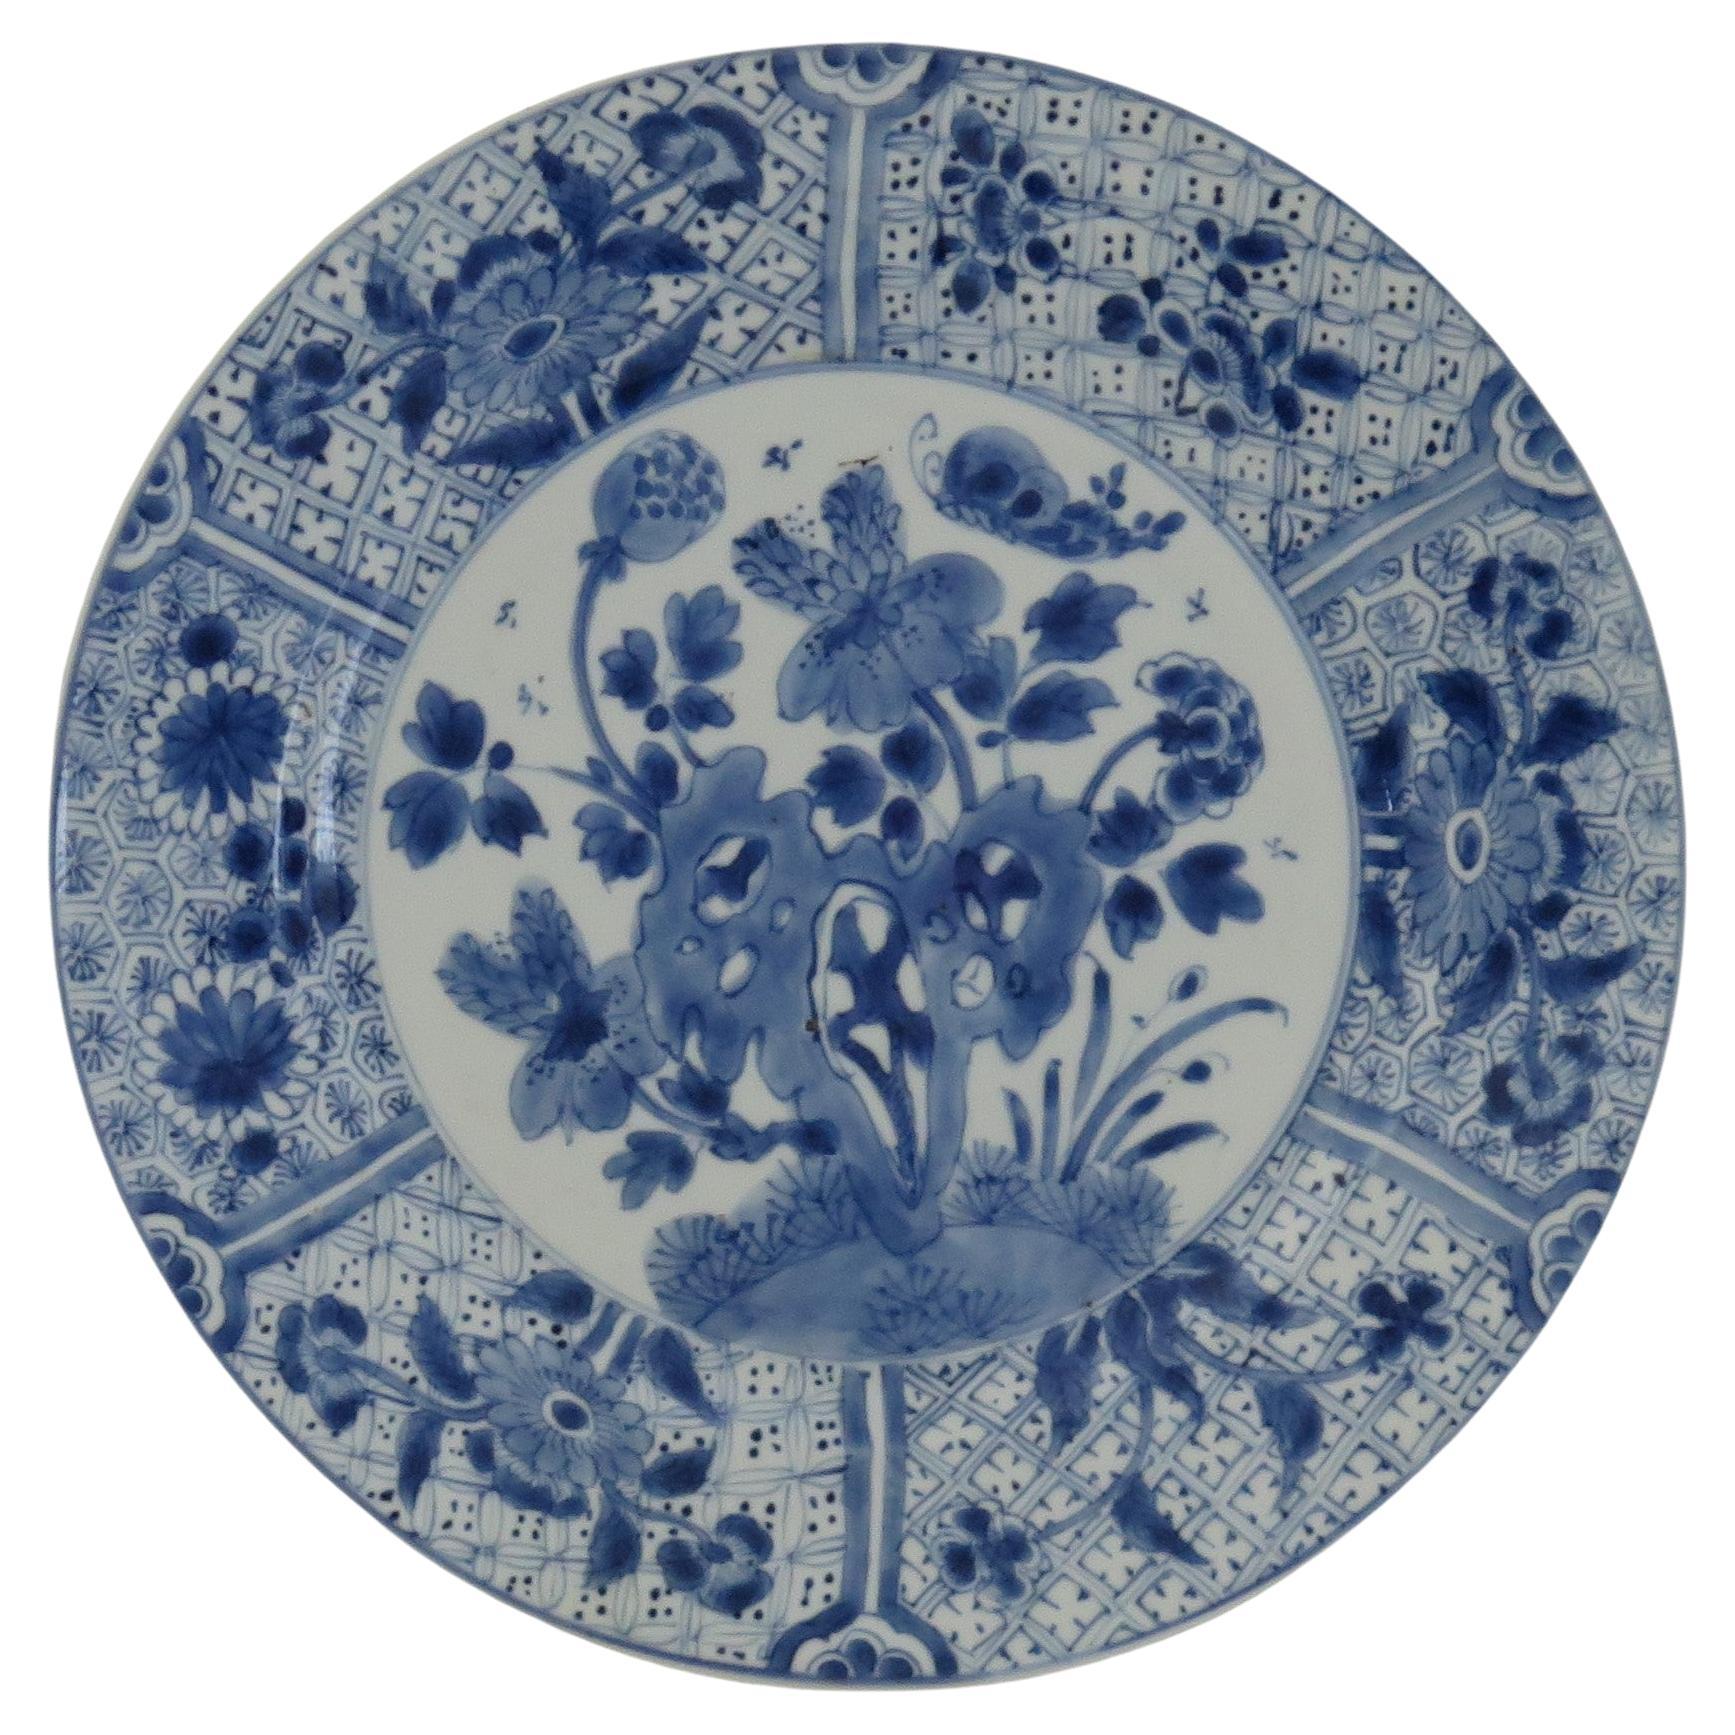 Marque chinoise Kangxi et assiette ou plat d'époque en porcelaine bleu et blanc, vers 1700